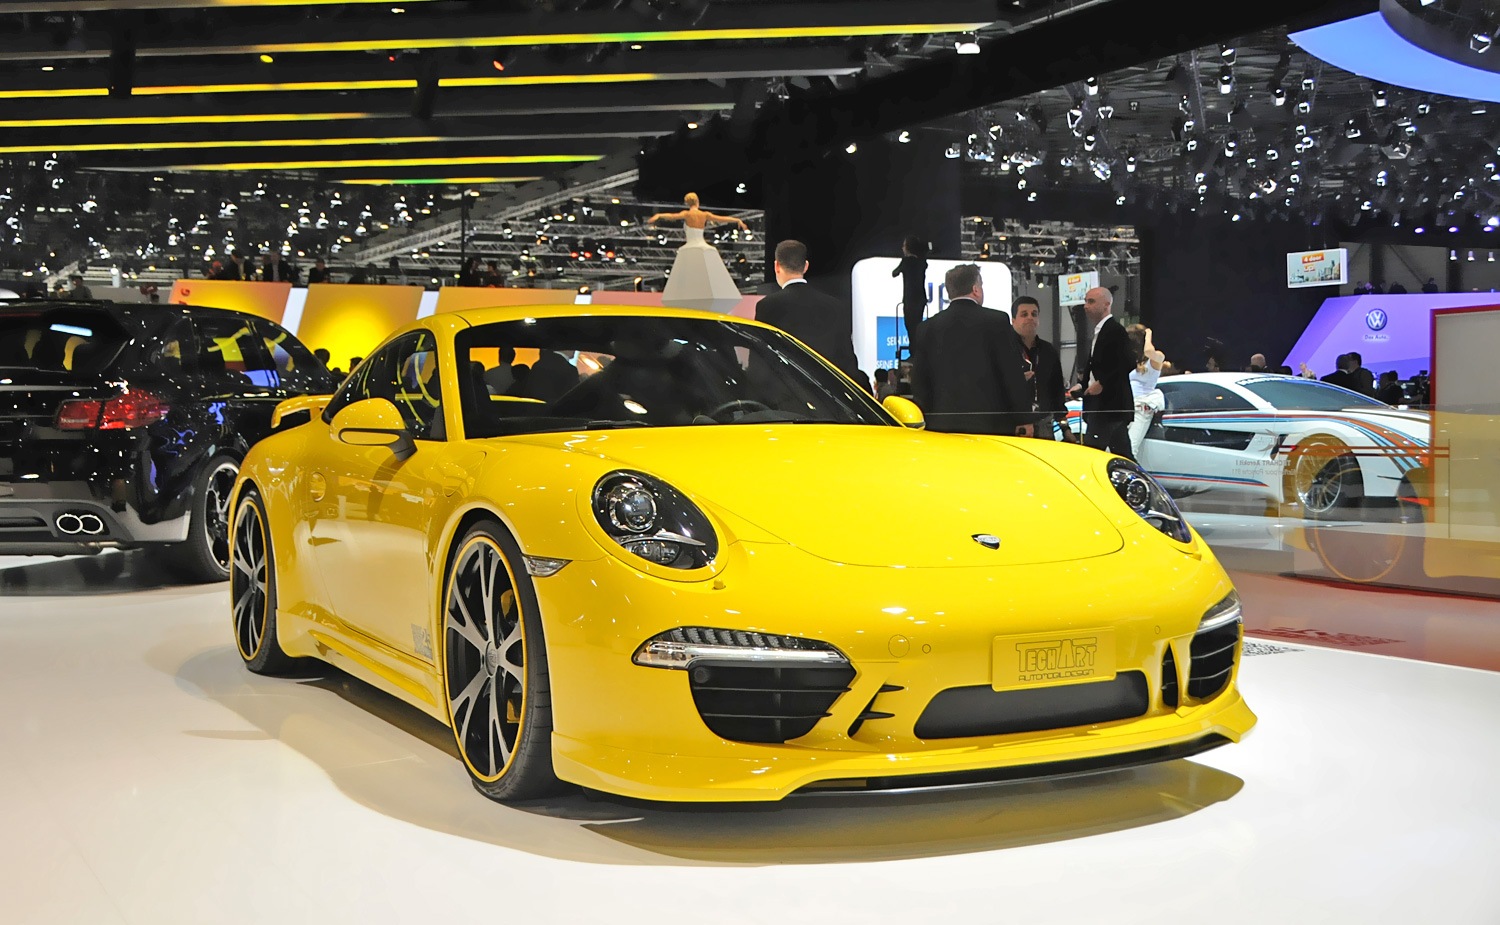 Techart Porsche 911 2012